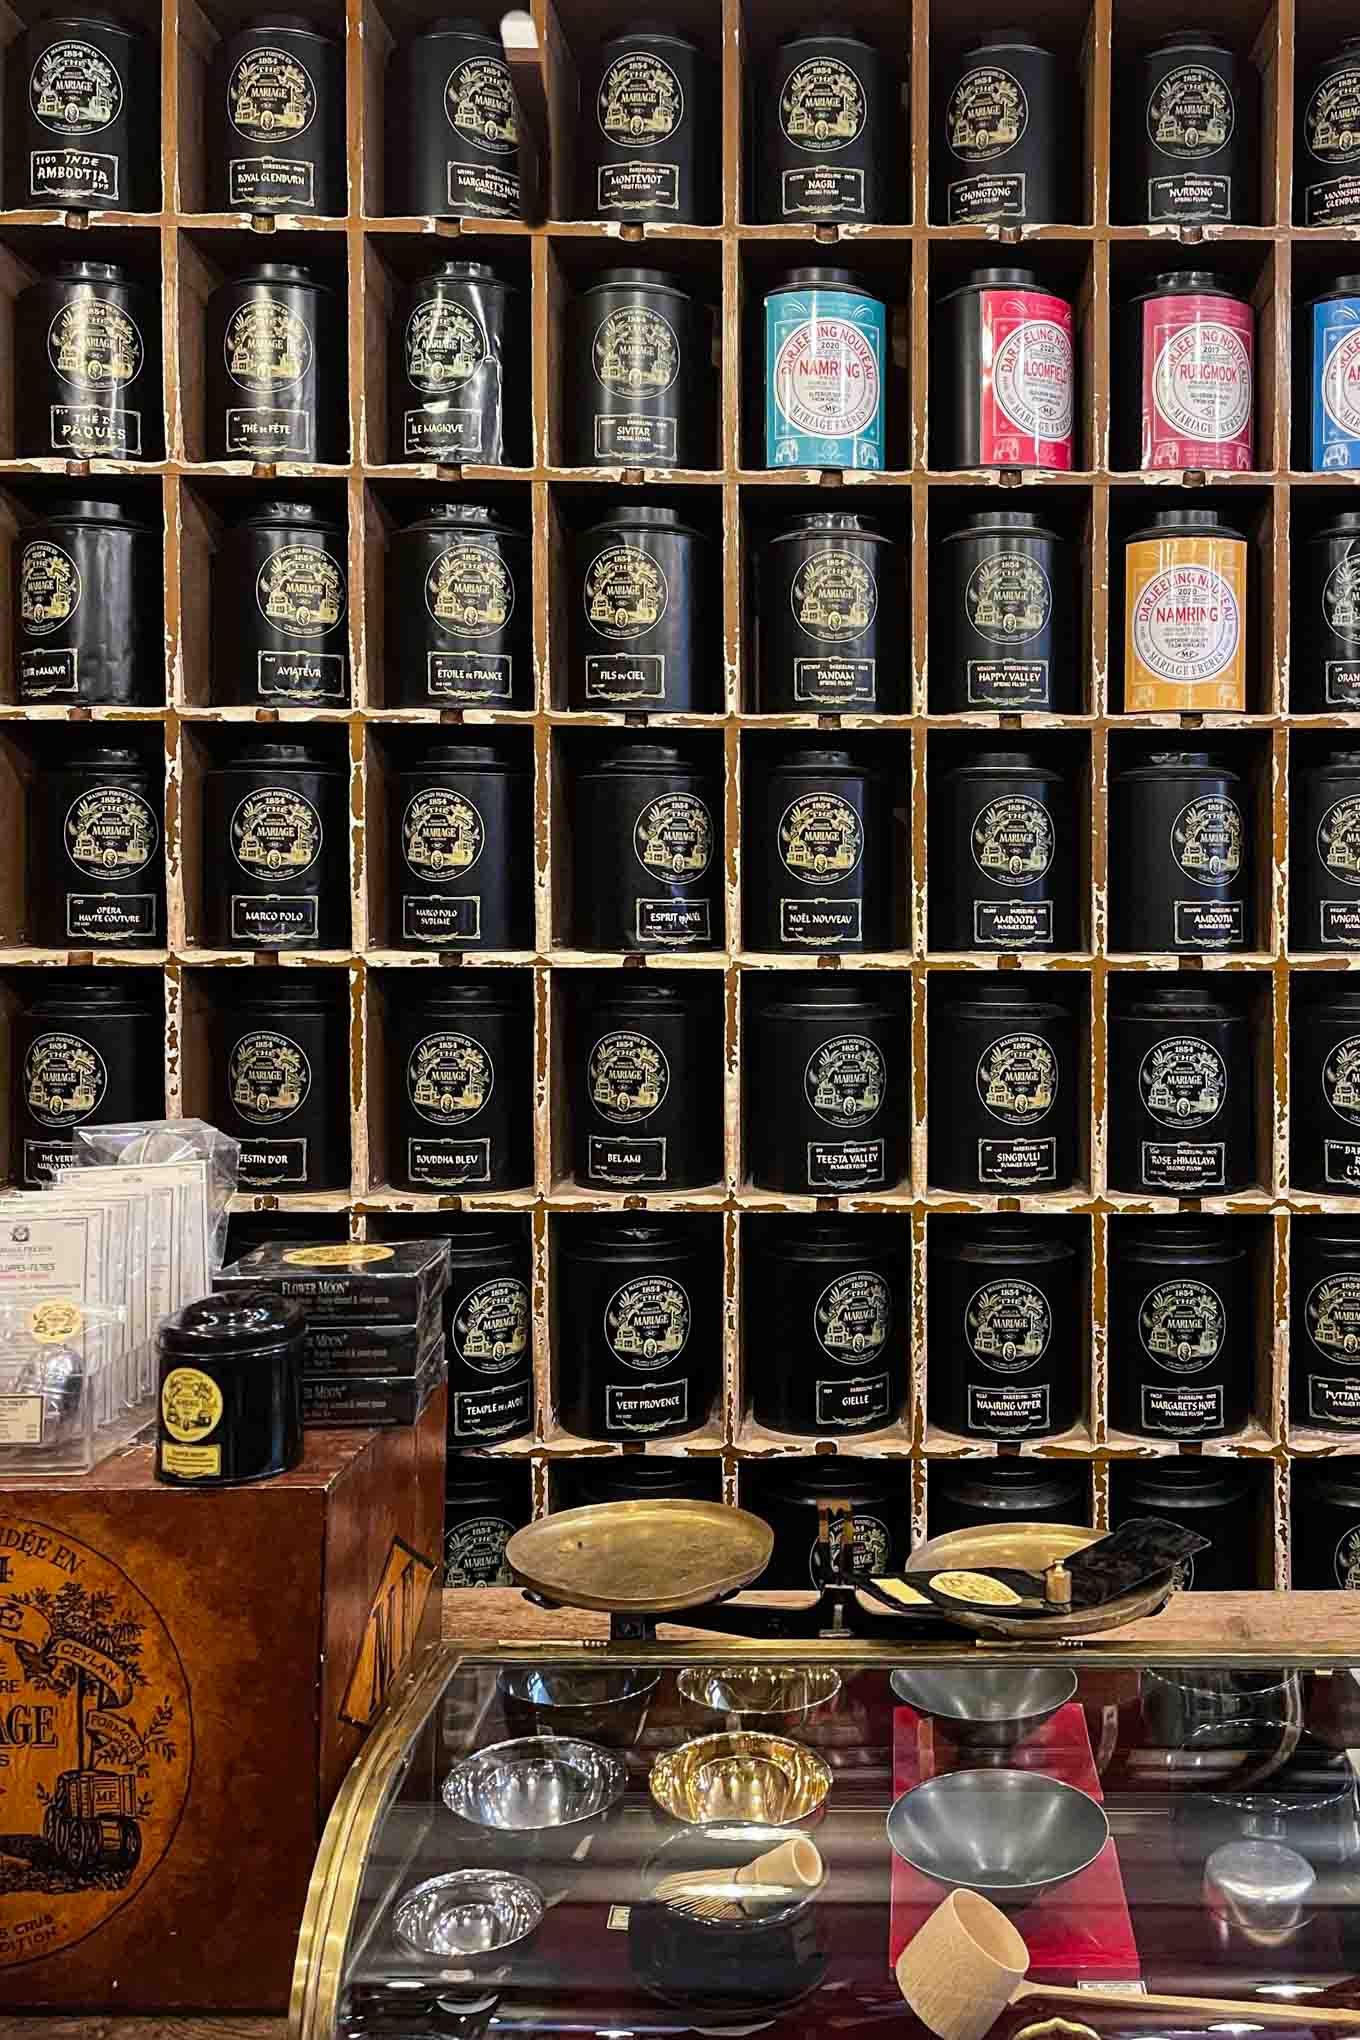 Mariage Frères Tea Shop Paris - The Taste Edit